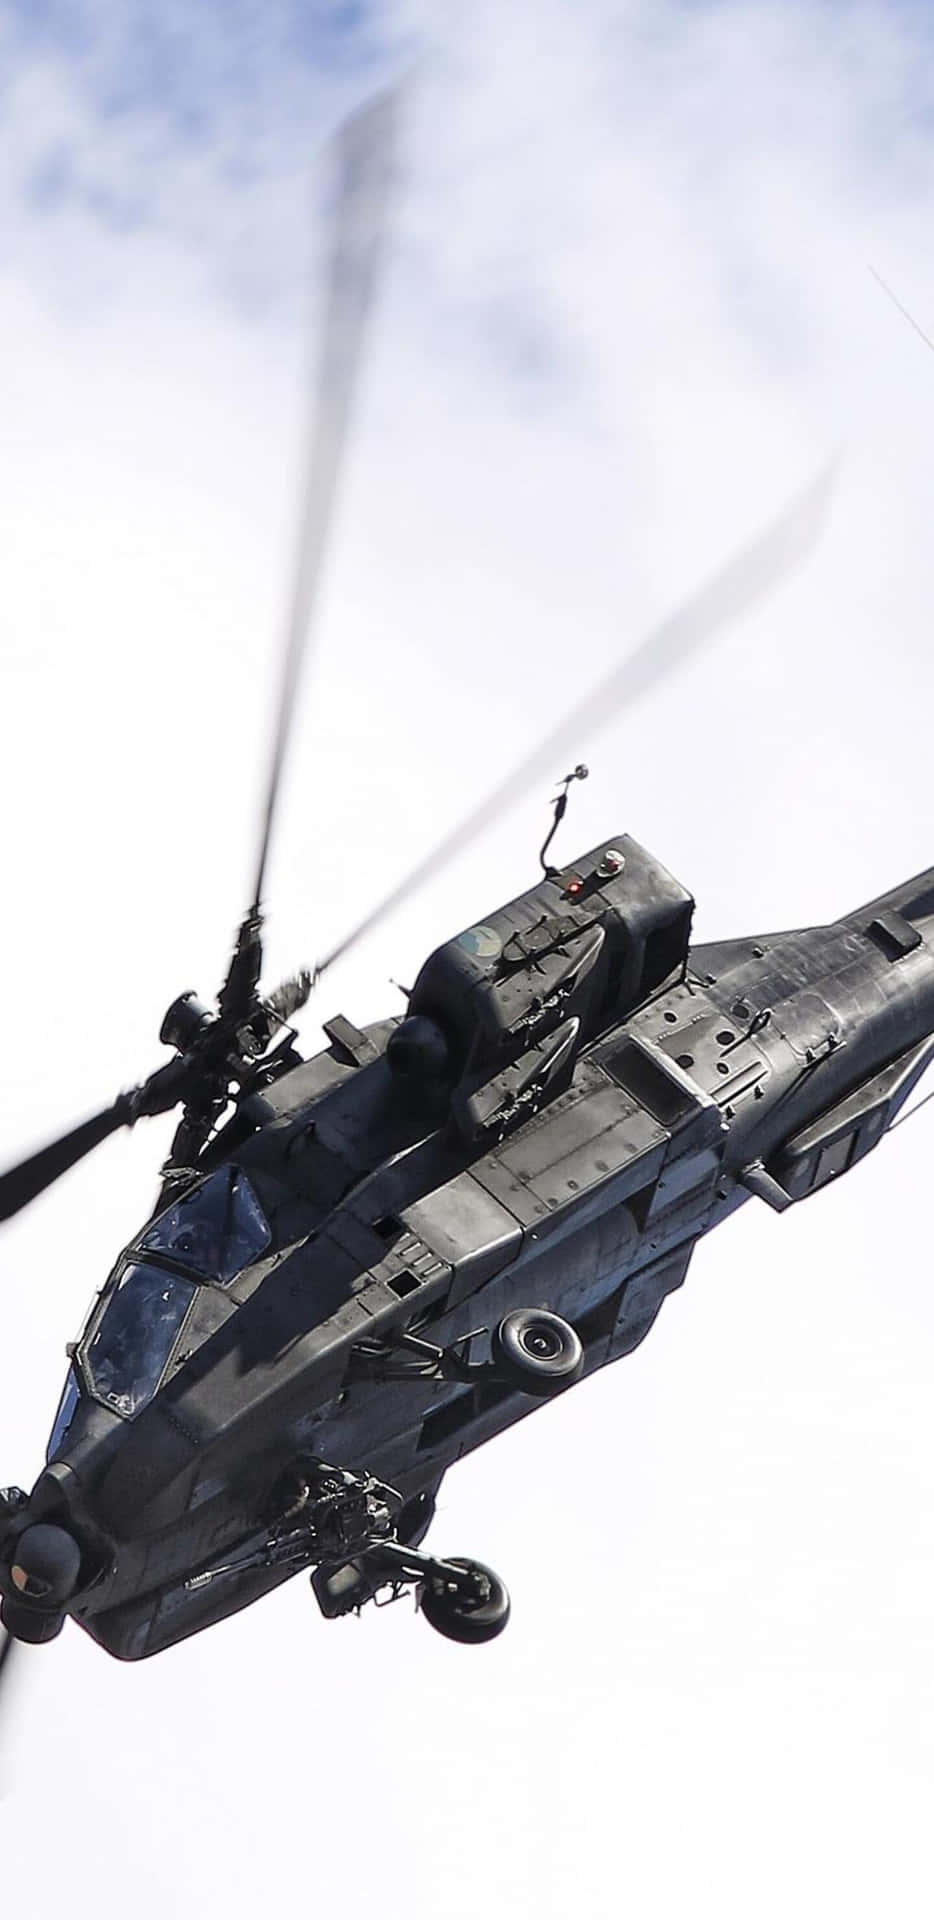 Fondode Pantalla De Helicópteros Para Pixel 3xl, Con Un Cielo Despejado Gris Y El Avión Boeing Ah-64 Apache.